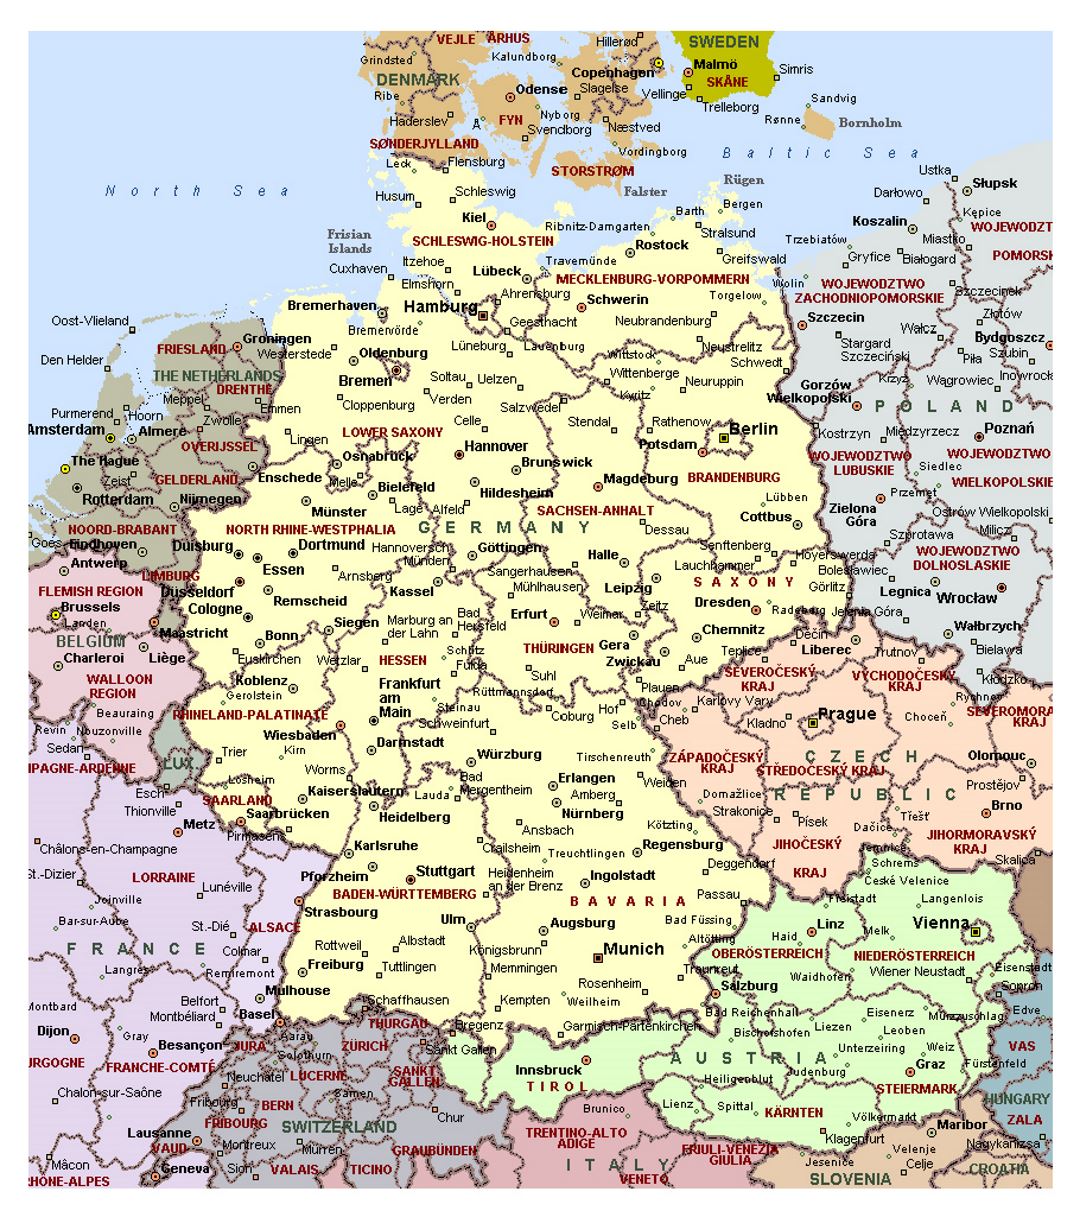 Mapa político detallado de Alemania con las divisiones administrativas y ciudades principales